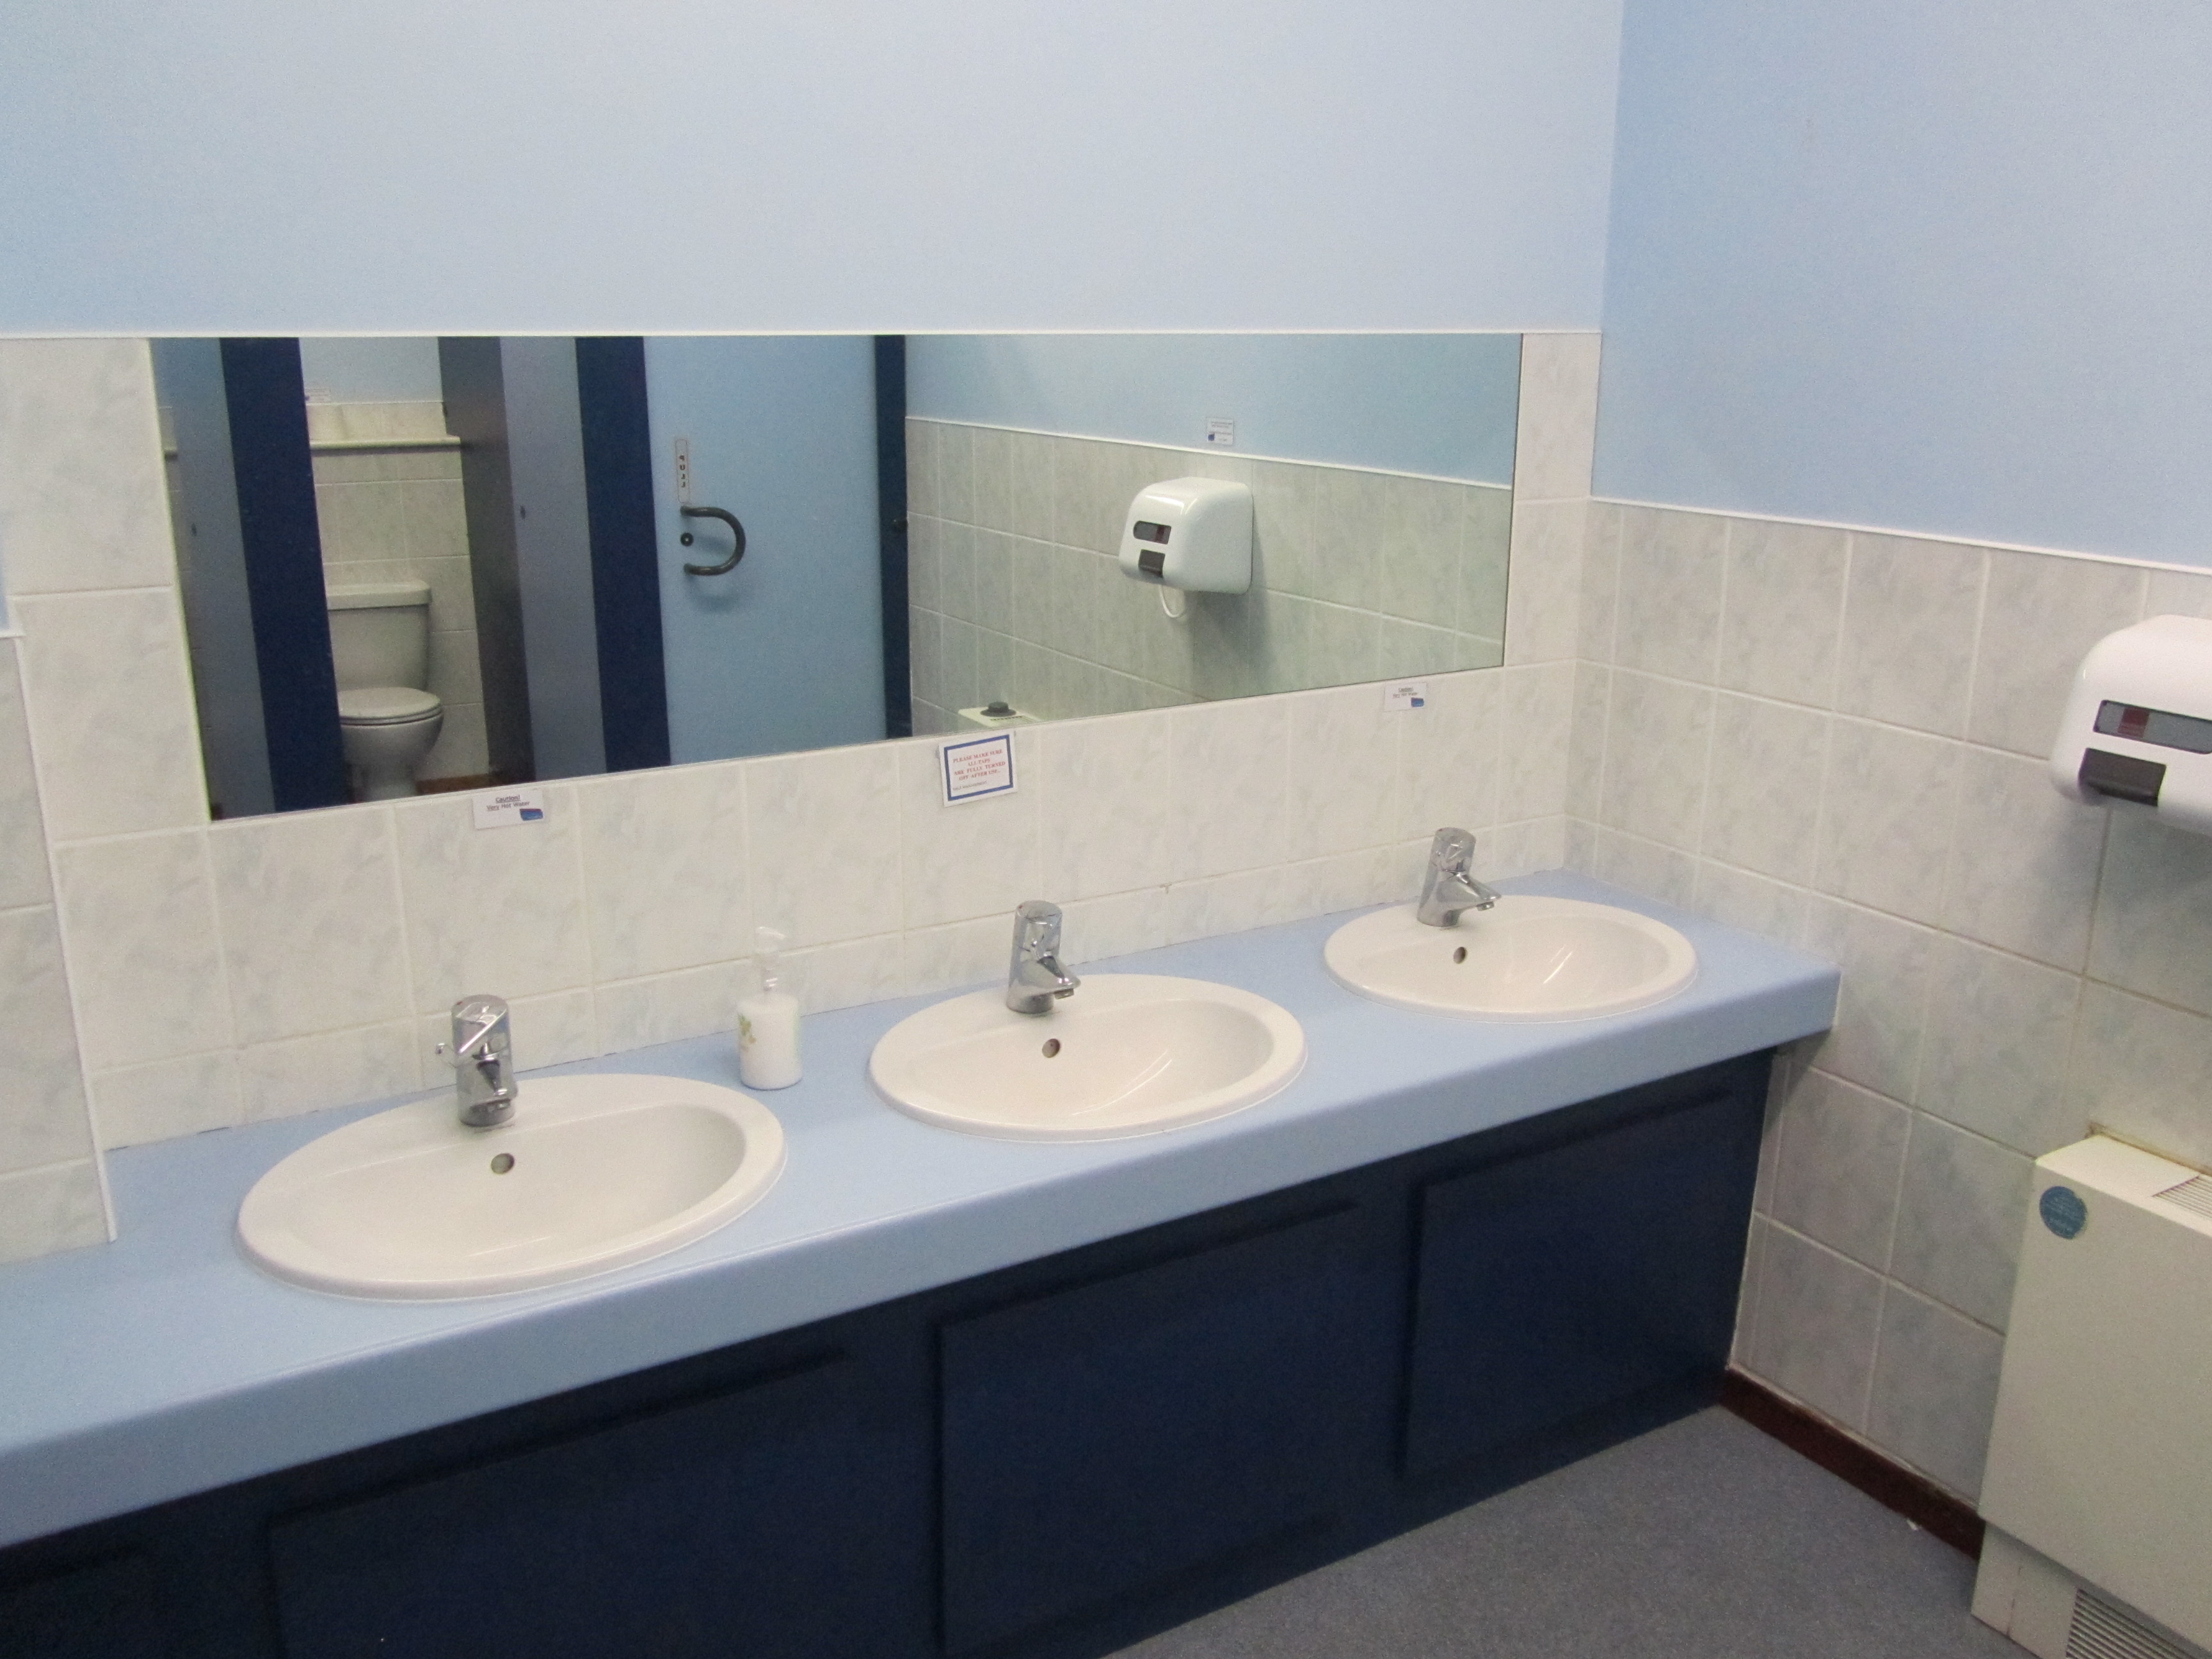 Rustington hall toilet facilities